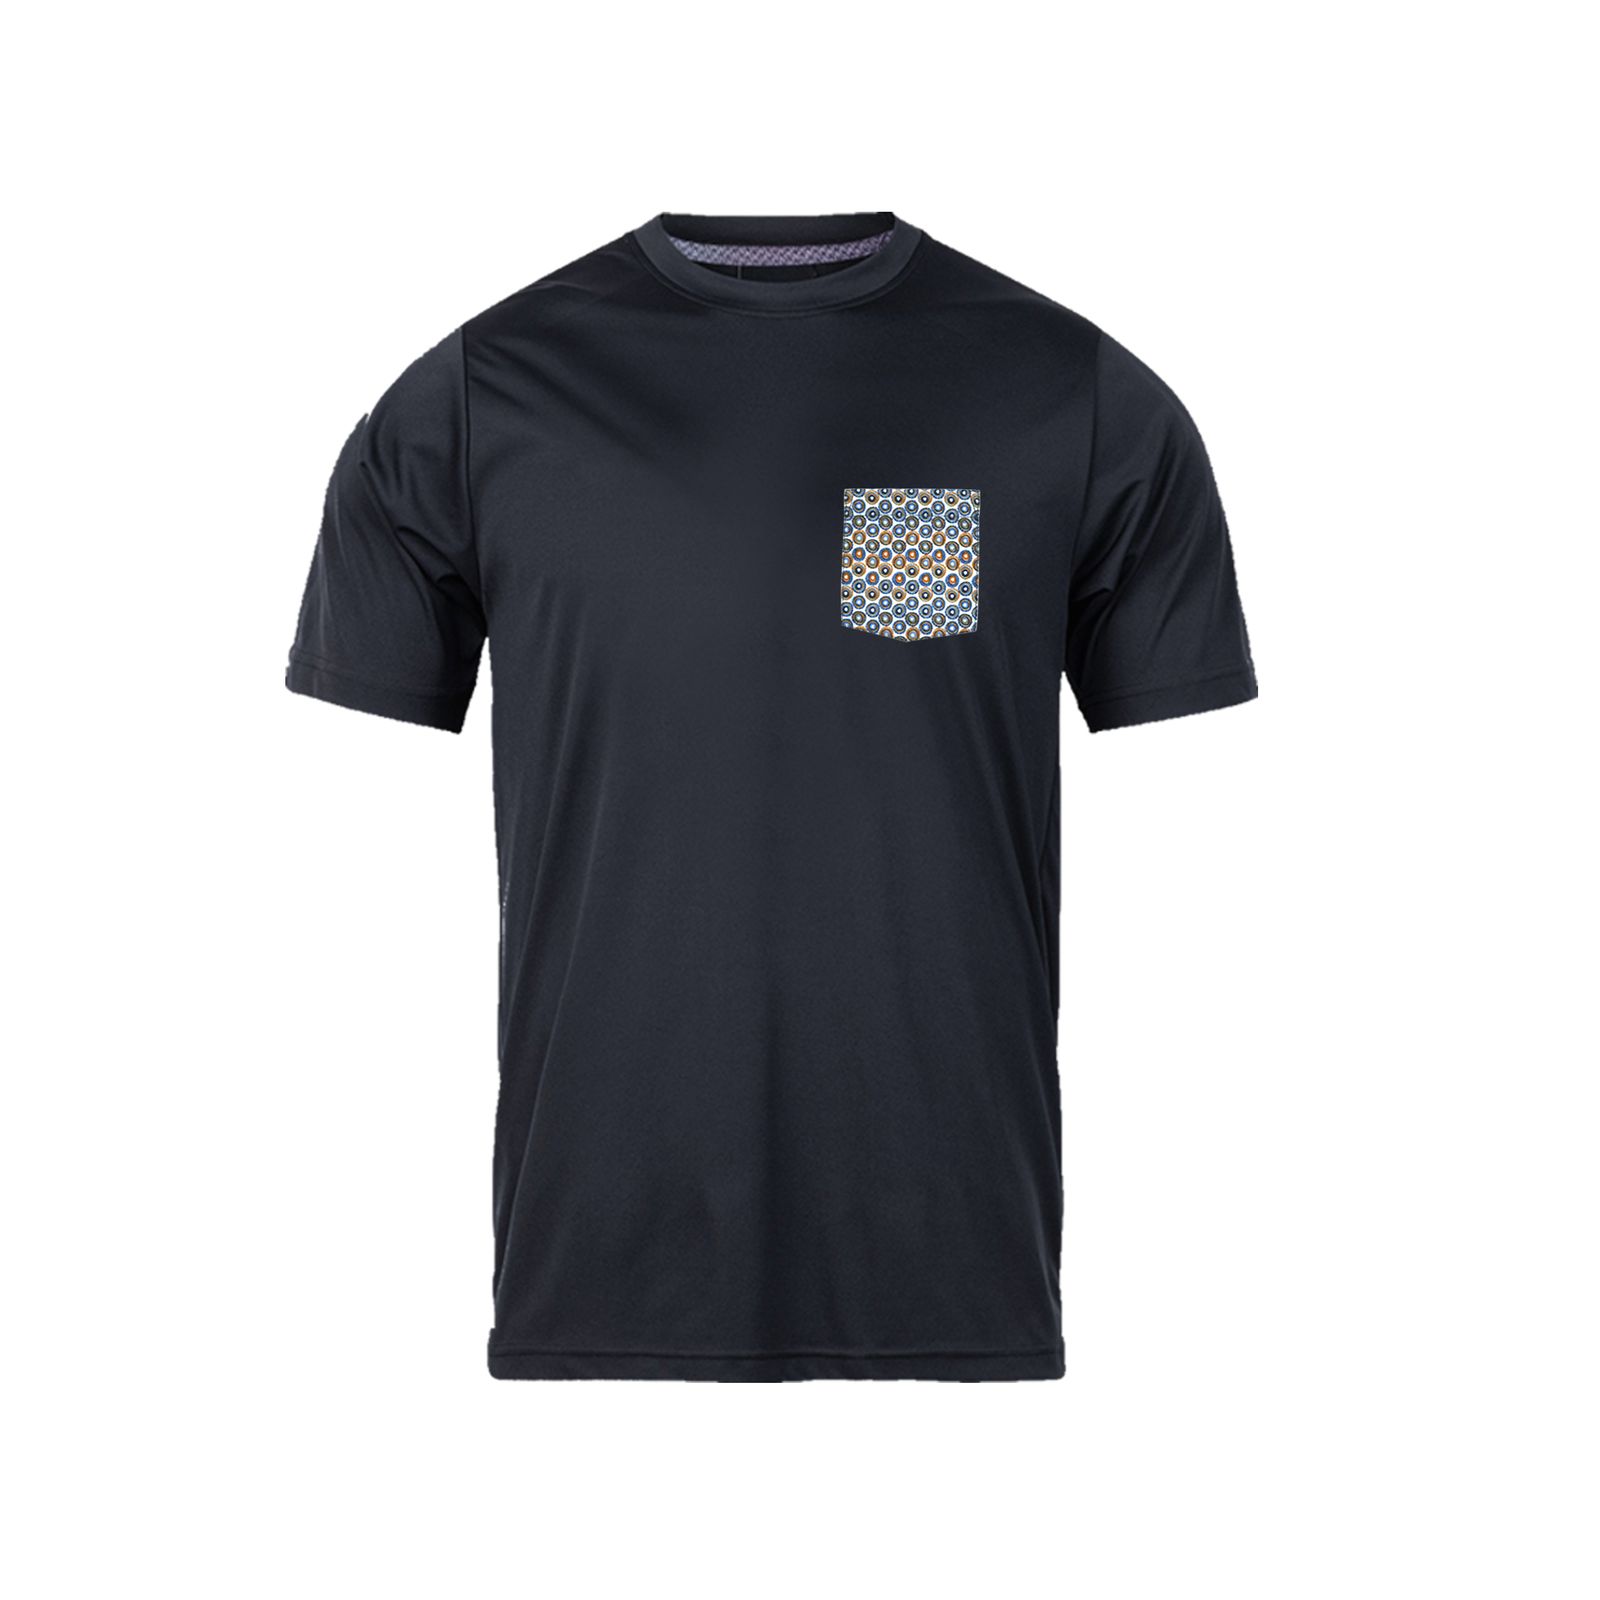 تی شرت آستین کوتاه مردانه رانژ مدل جیب دار کد 22RA04D05M-2457-01 -  - 1